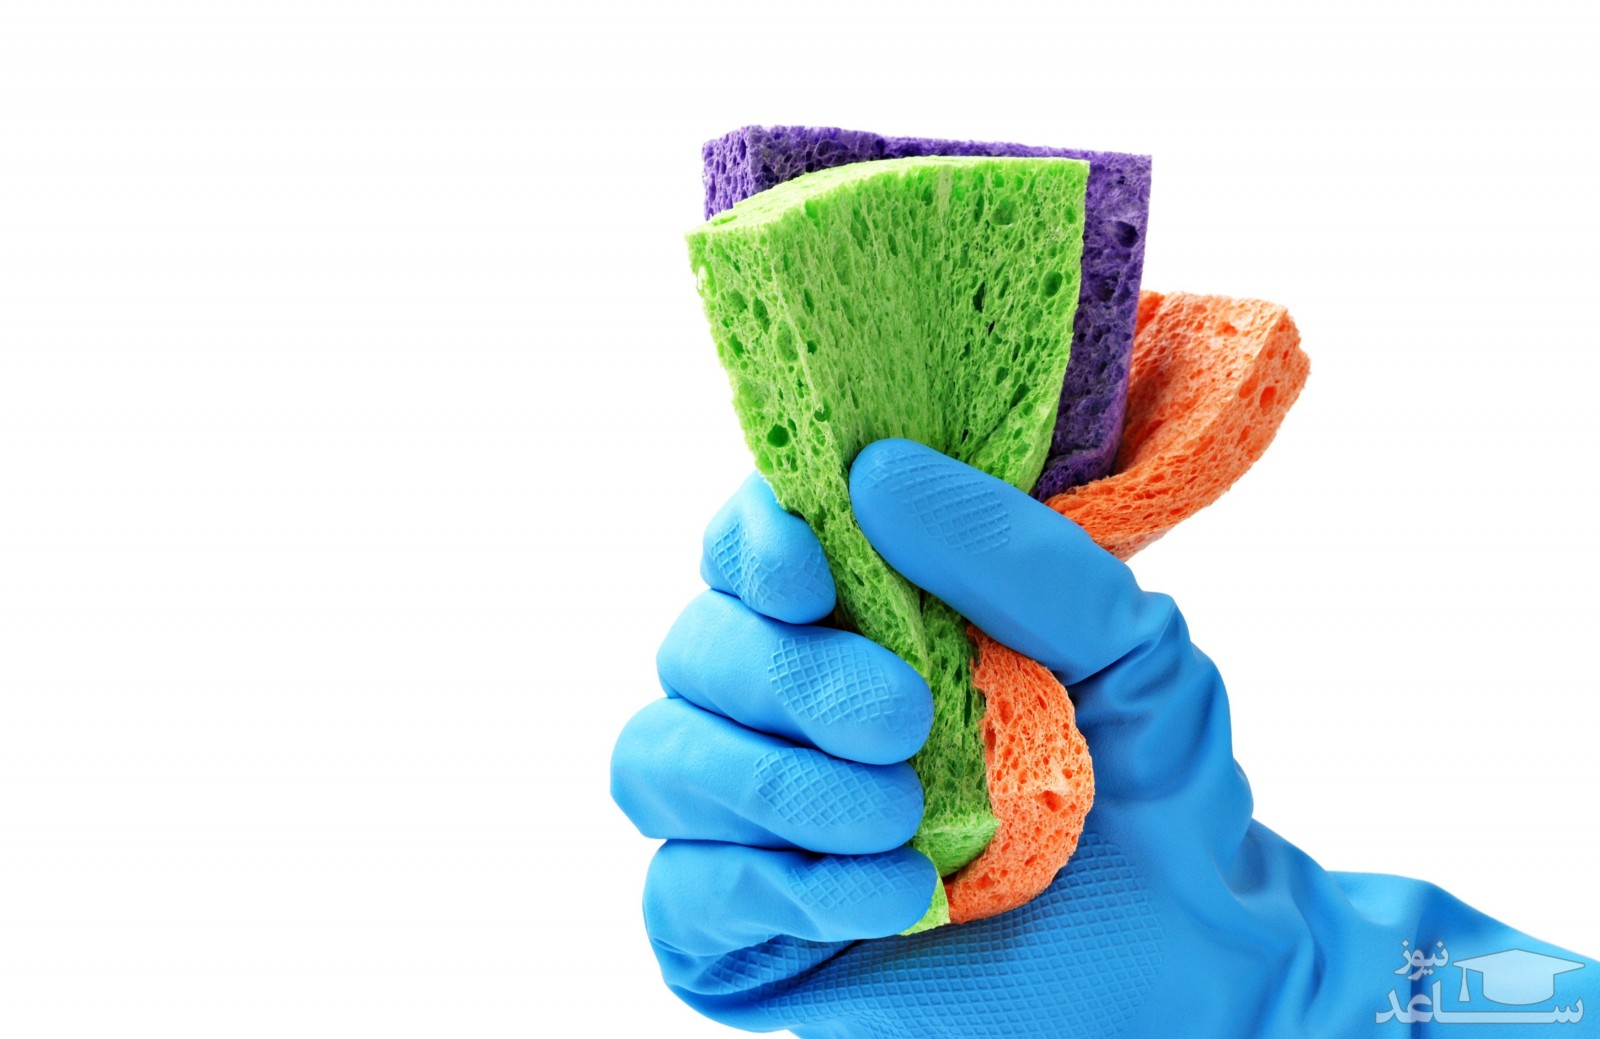 روش شستن و تمیز کردن اسکاچ ظرفشویی